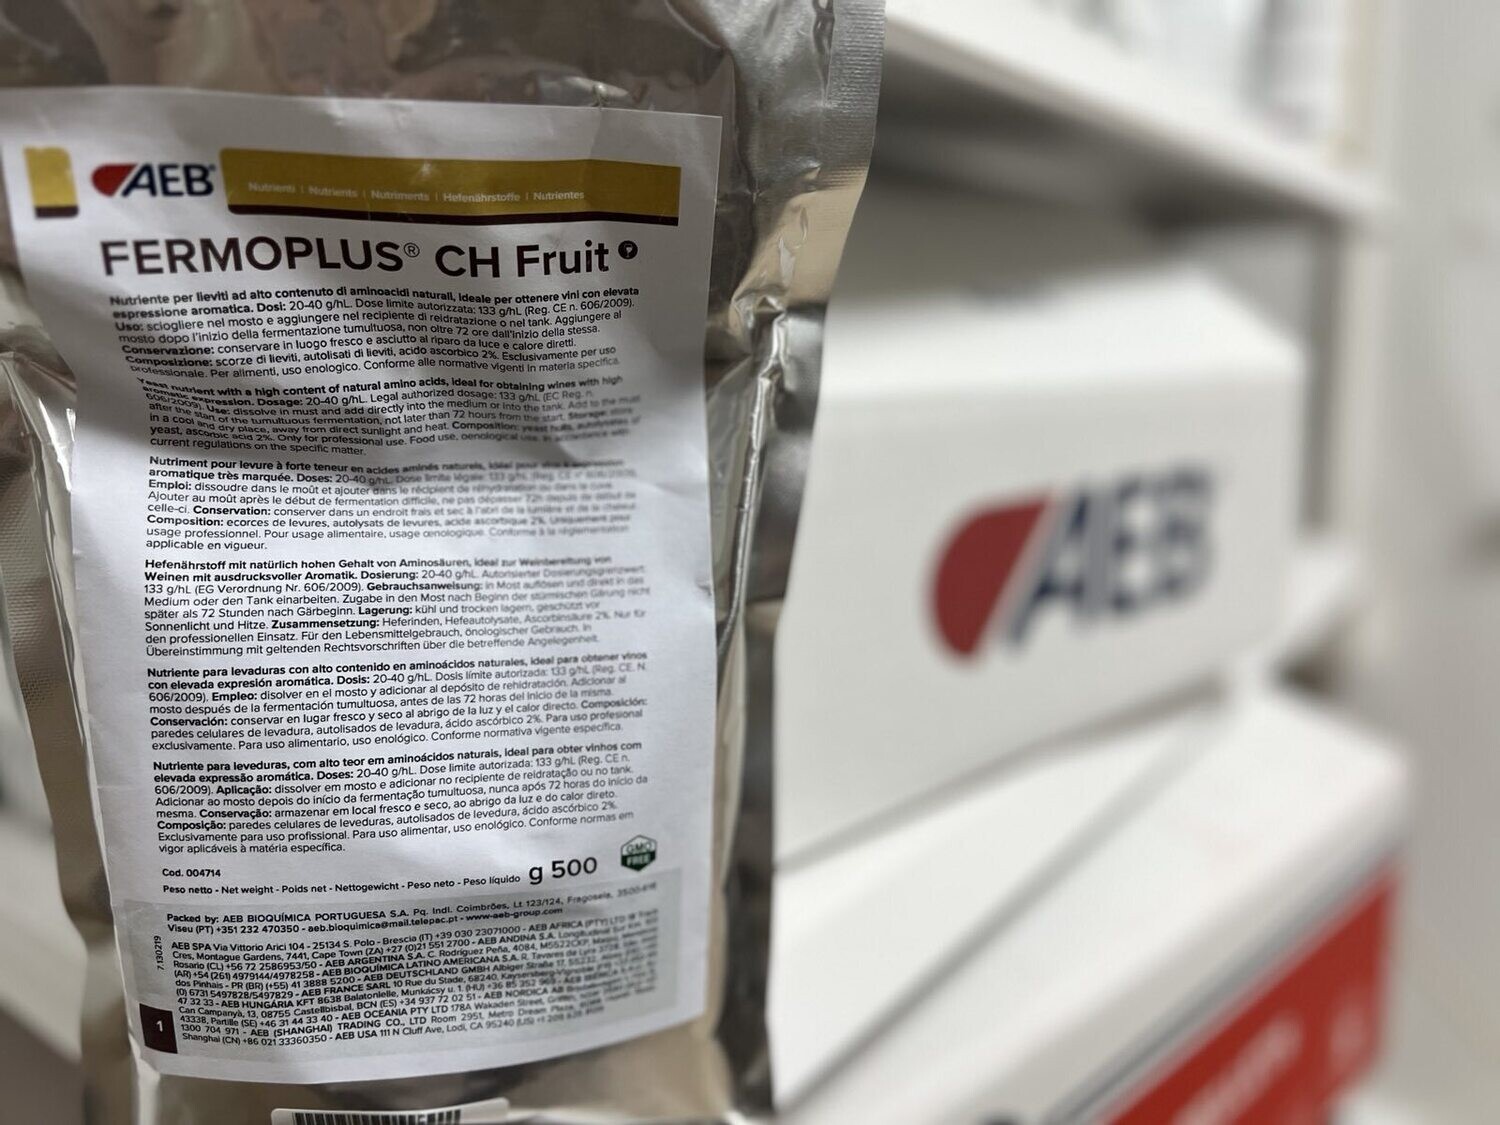 FERMOPLUS CH FRUIT - 0,5kg, AEB